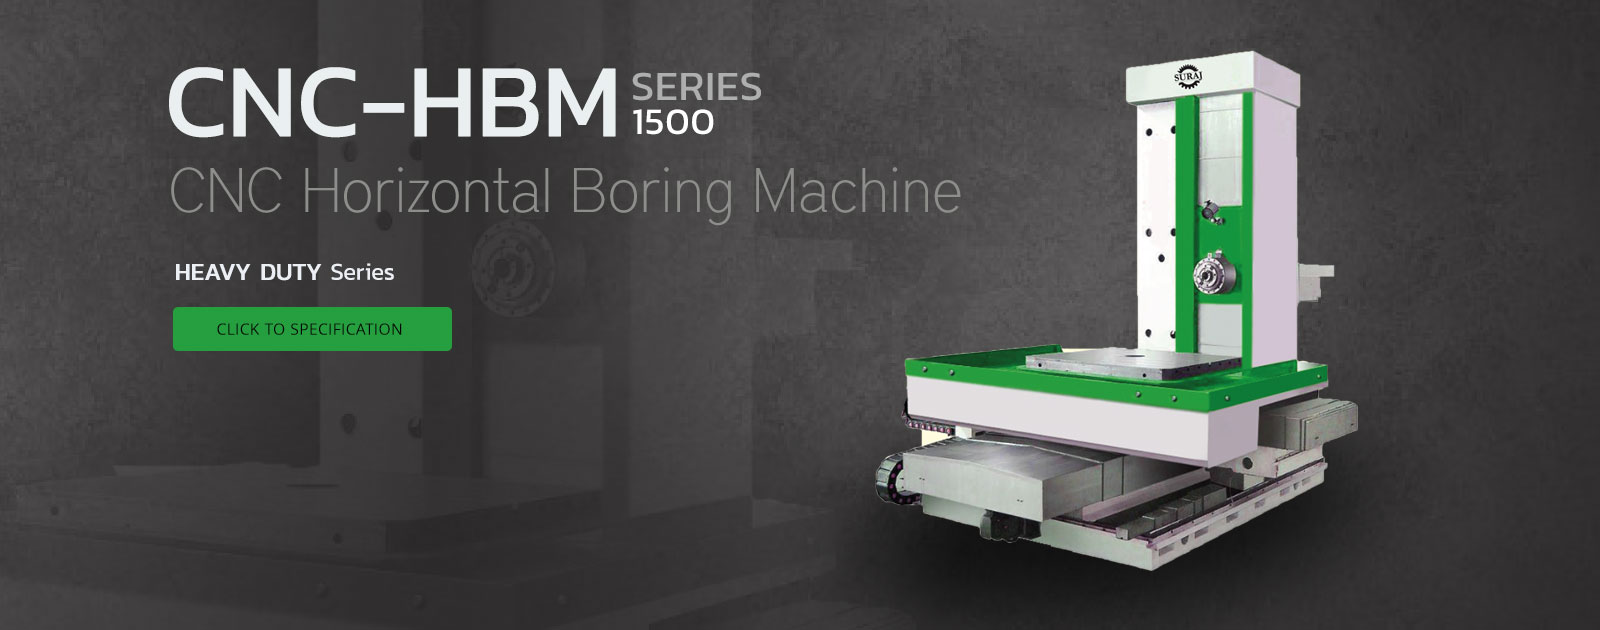 cnc horizontal boring machine